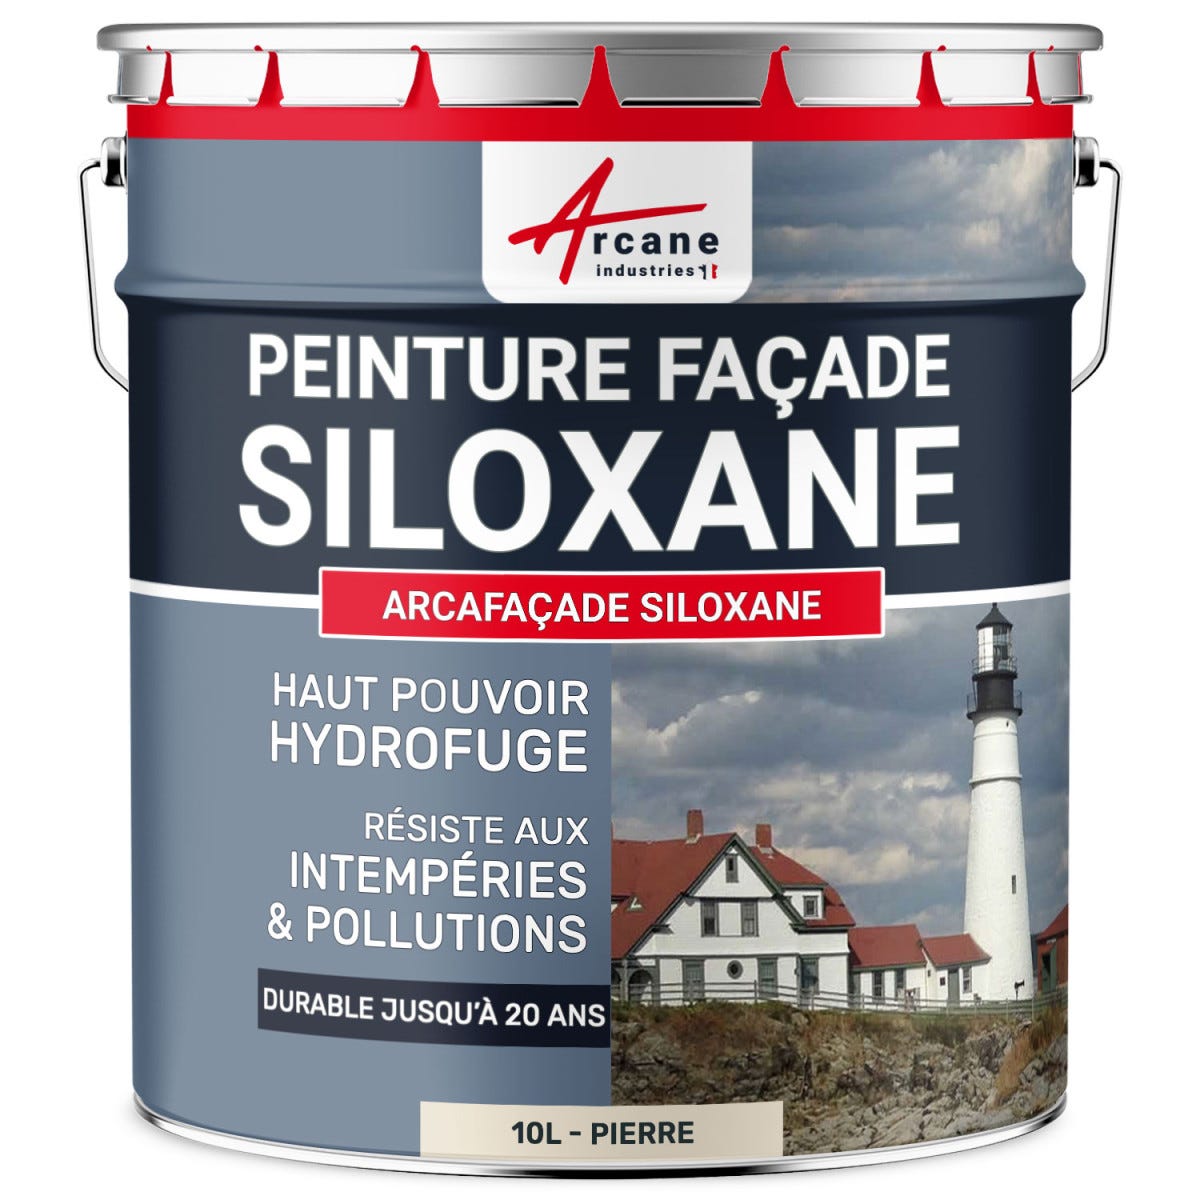 Peinture Facade Siloxane Hydrofuge - ARCAFACADE SILOXANE - 10 L (+ ou - 60 m² en 1 couche) - Pierre - RAL 090 90 10 - ARCANE INDUSTRIES 0